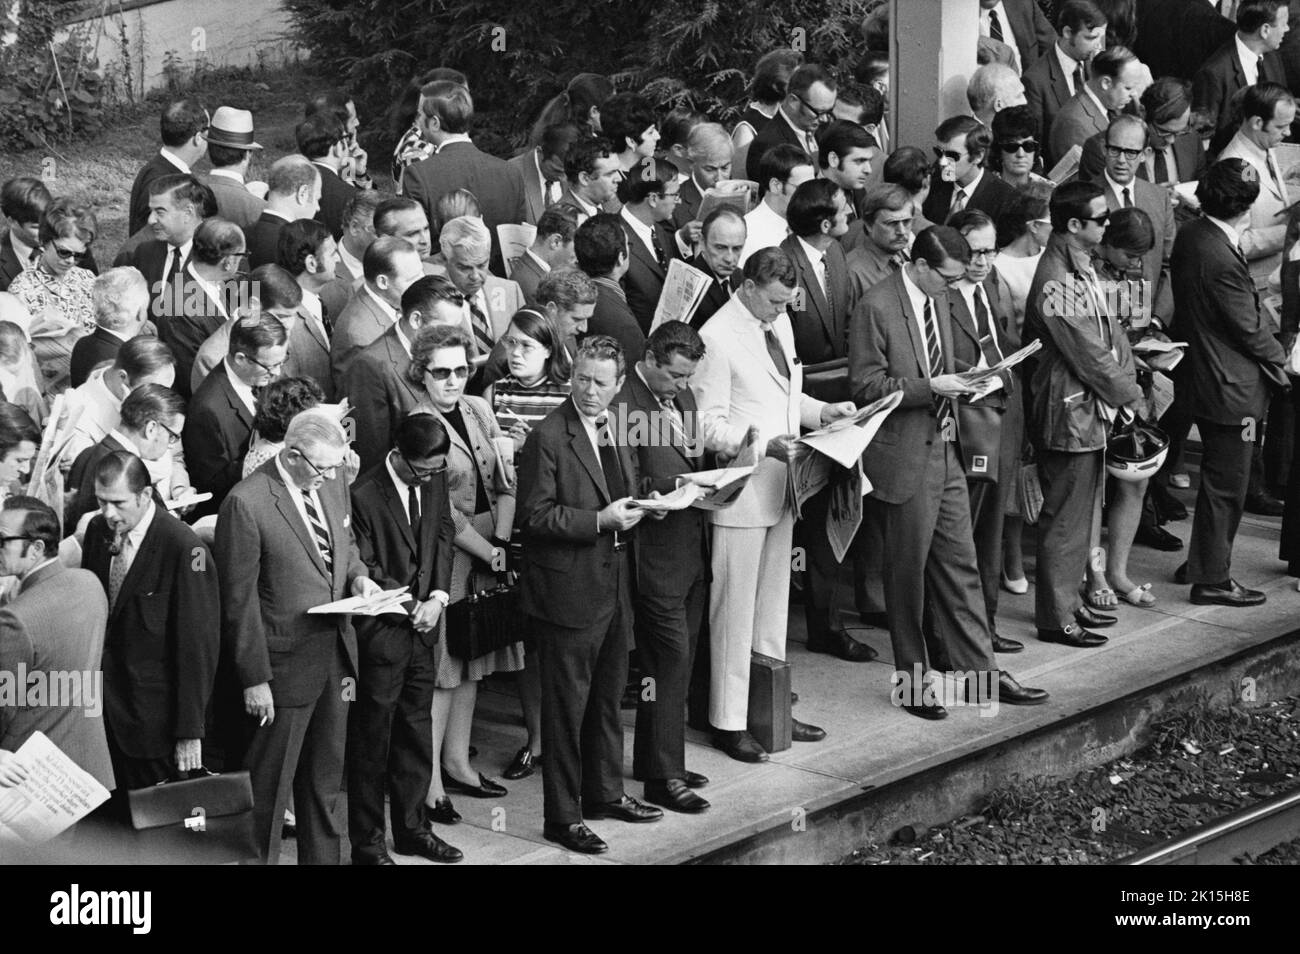 Pasajeros del tren Penn Central esperando en una plataforma abarrotada en Scarsdale, Nueva York, alrededor de 1976. La mayoría de la multitud es blanca y masculina, mientras que las mujeres son aproximadamente 1 en 7 de la fuerza laboral que se muestra aquí. Foto de stock